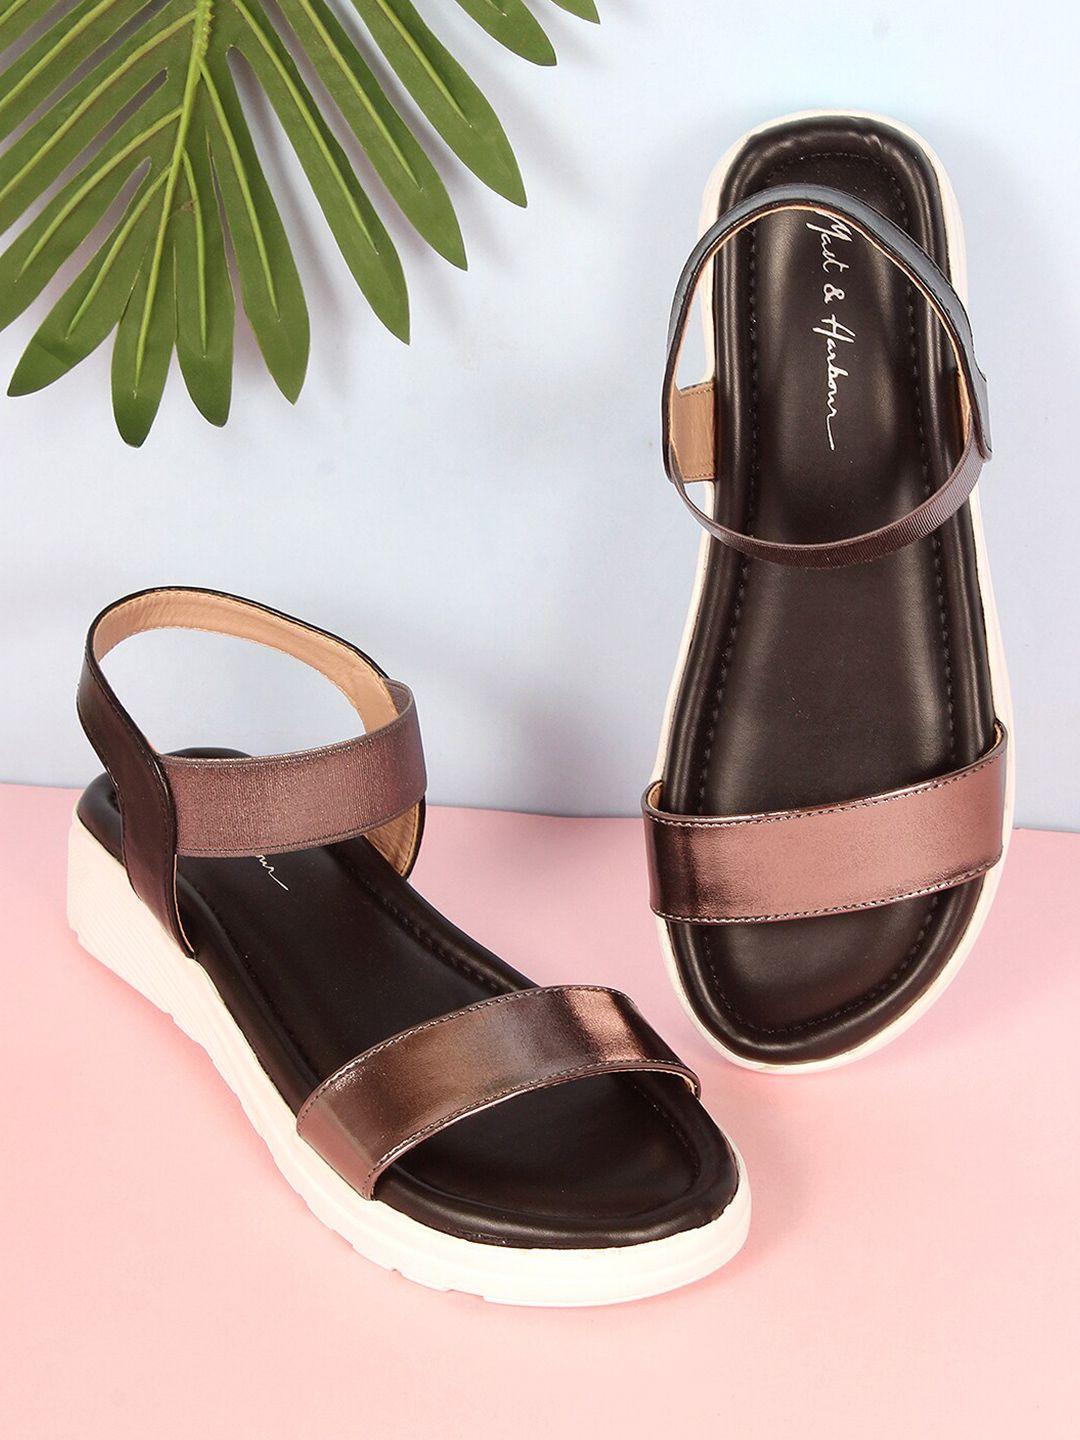 mast & harbour metallic-toned and black open toe comfort heels